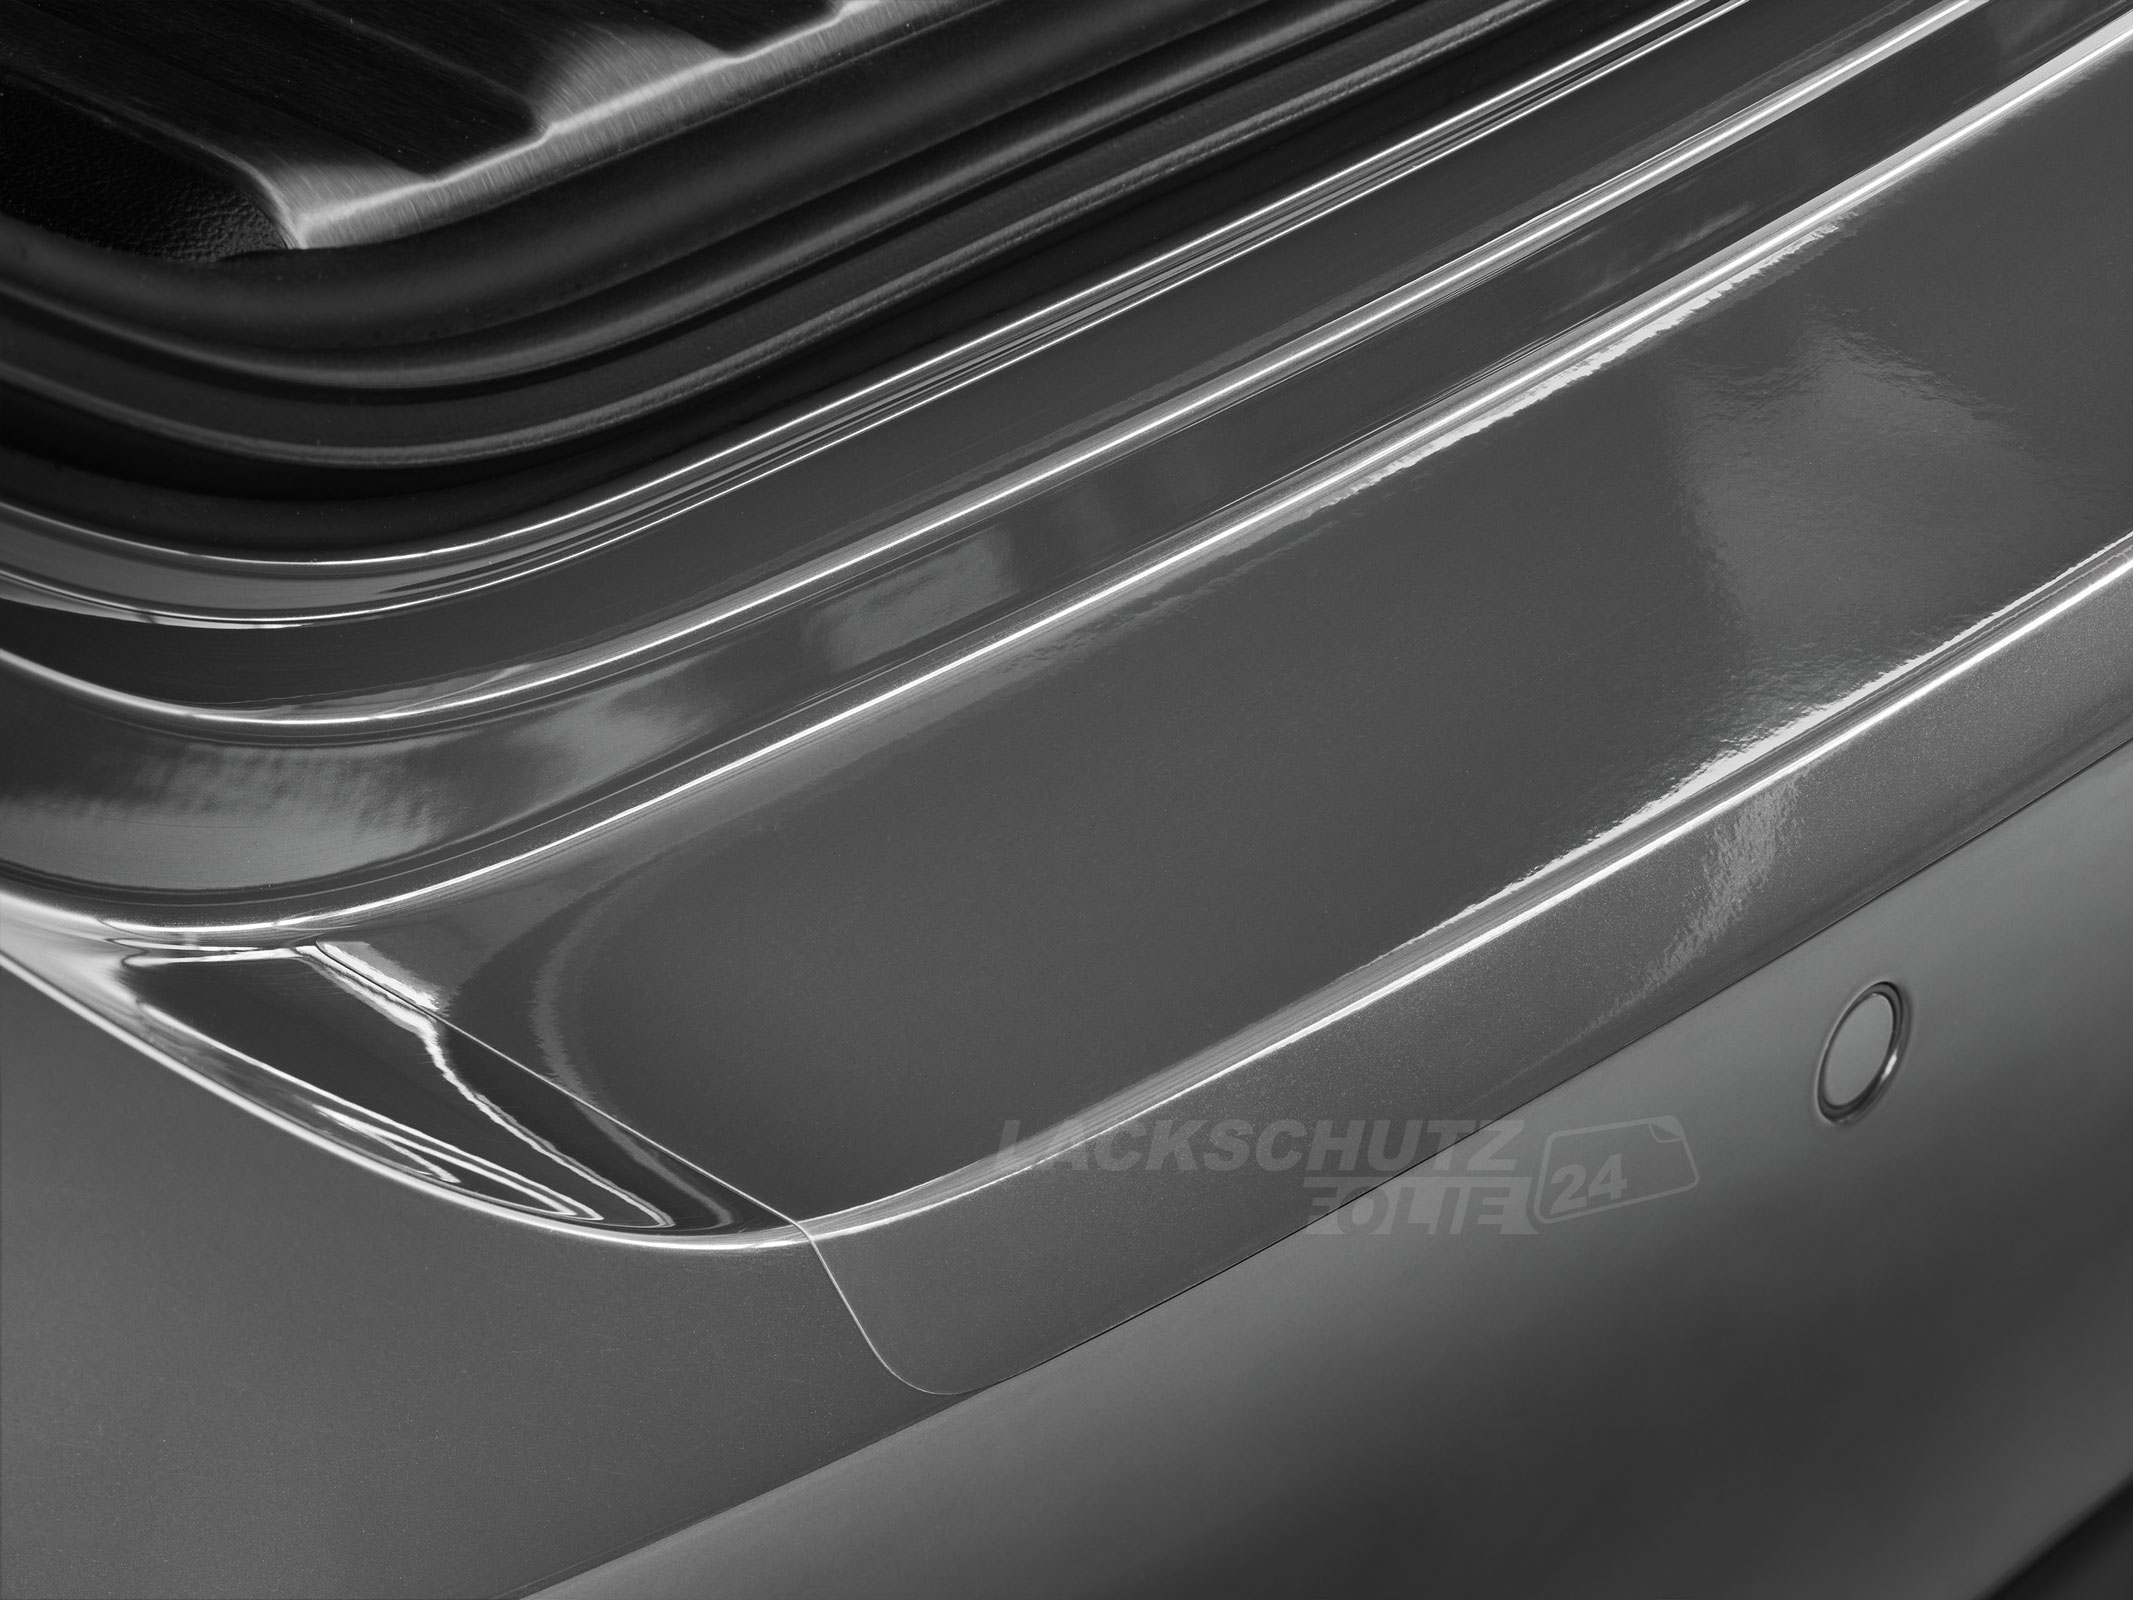 Ladekantenschutzfolie - Transparent Glatt Hochglänzend 240 µm stark für Renault Laguna Coupe ab BJ 2009